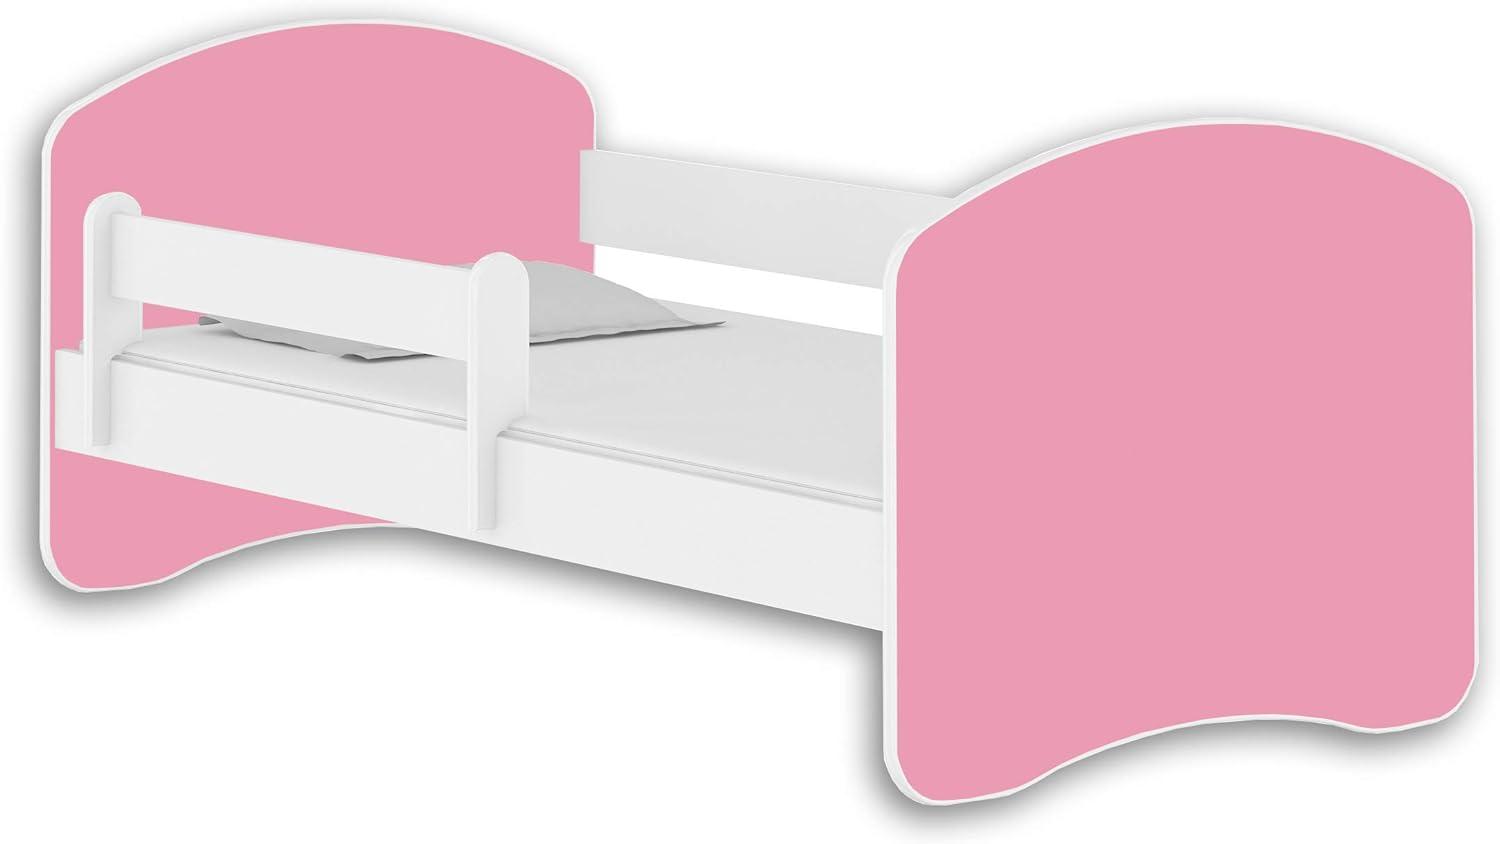 Jugendbett Kinderbett mit einer Schublade mit Rausfallschutz und Matratze Weiß ACMA II (140x70 cm, Weiß - Rosa) Bild 1